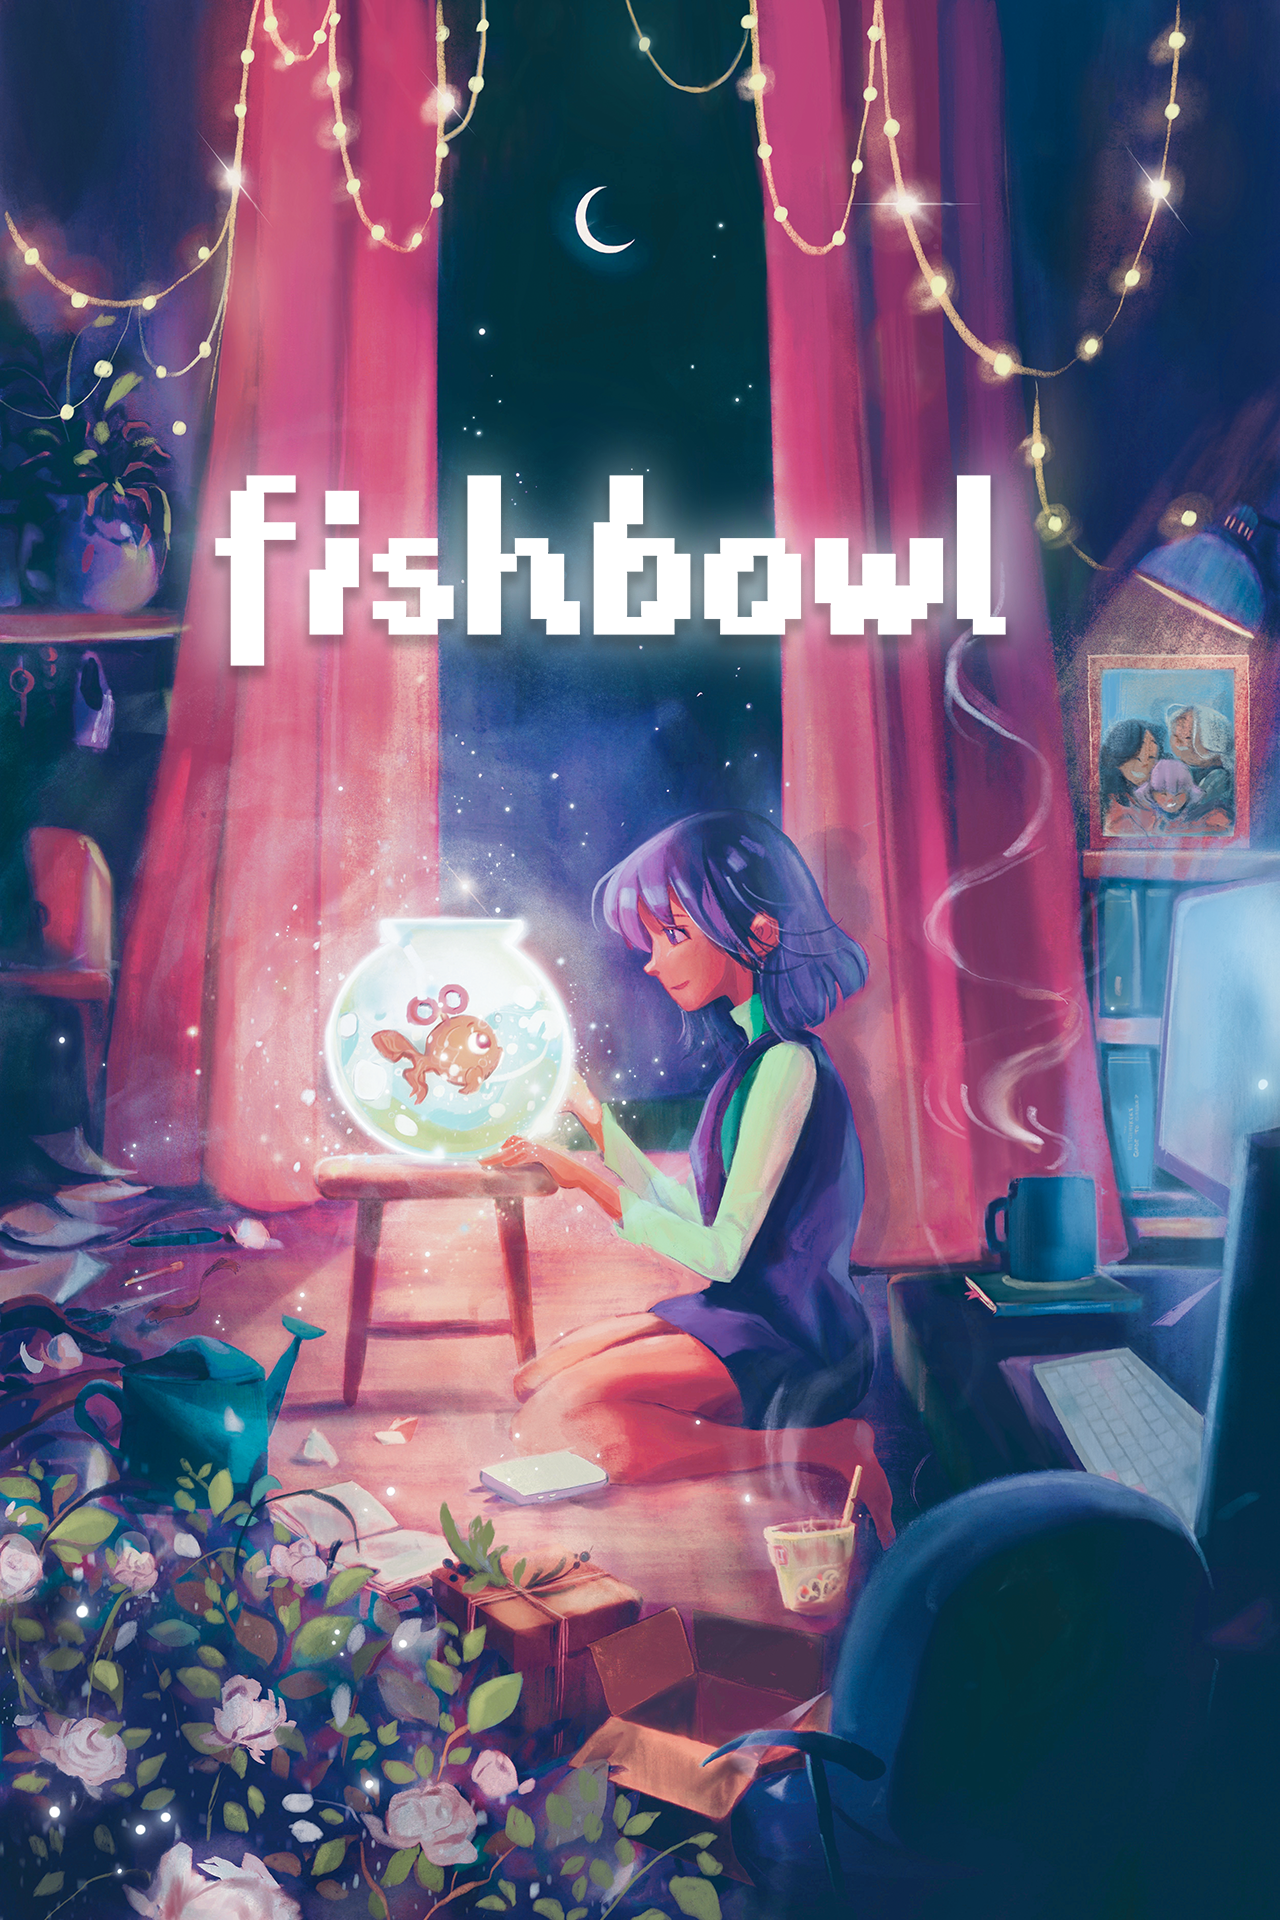 Fishbowl capsule art